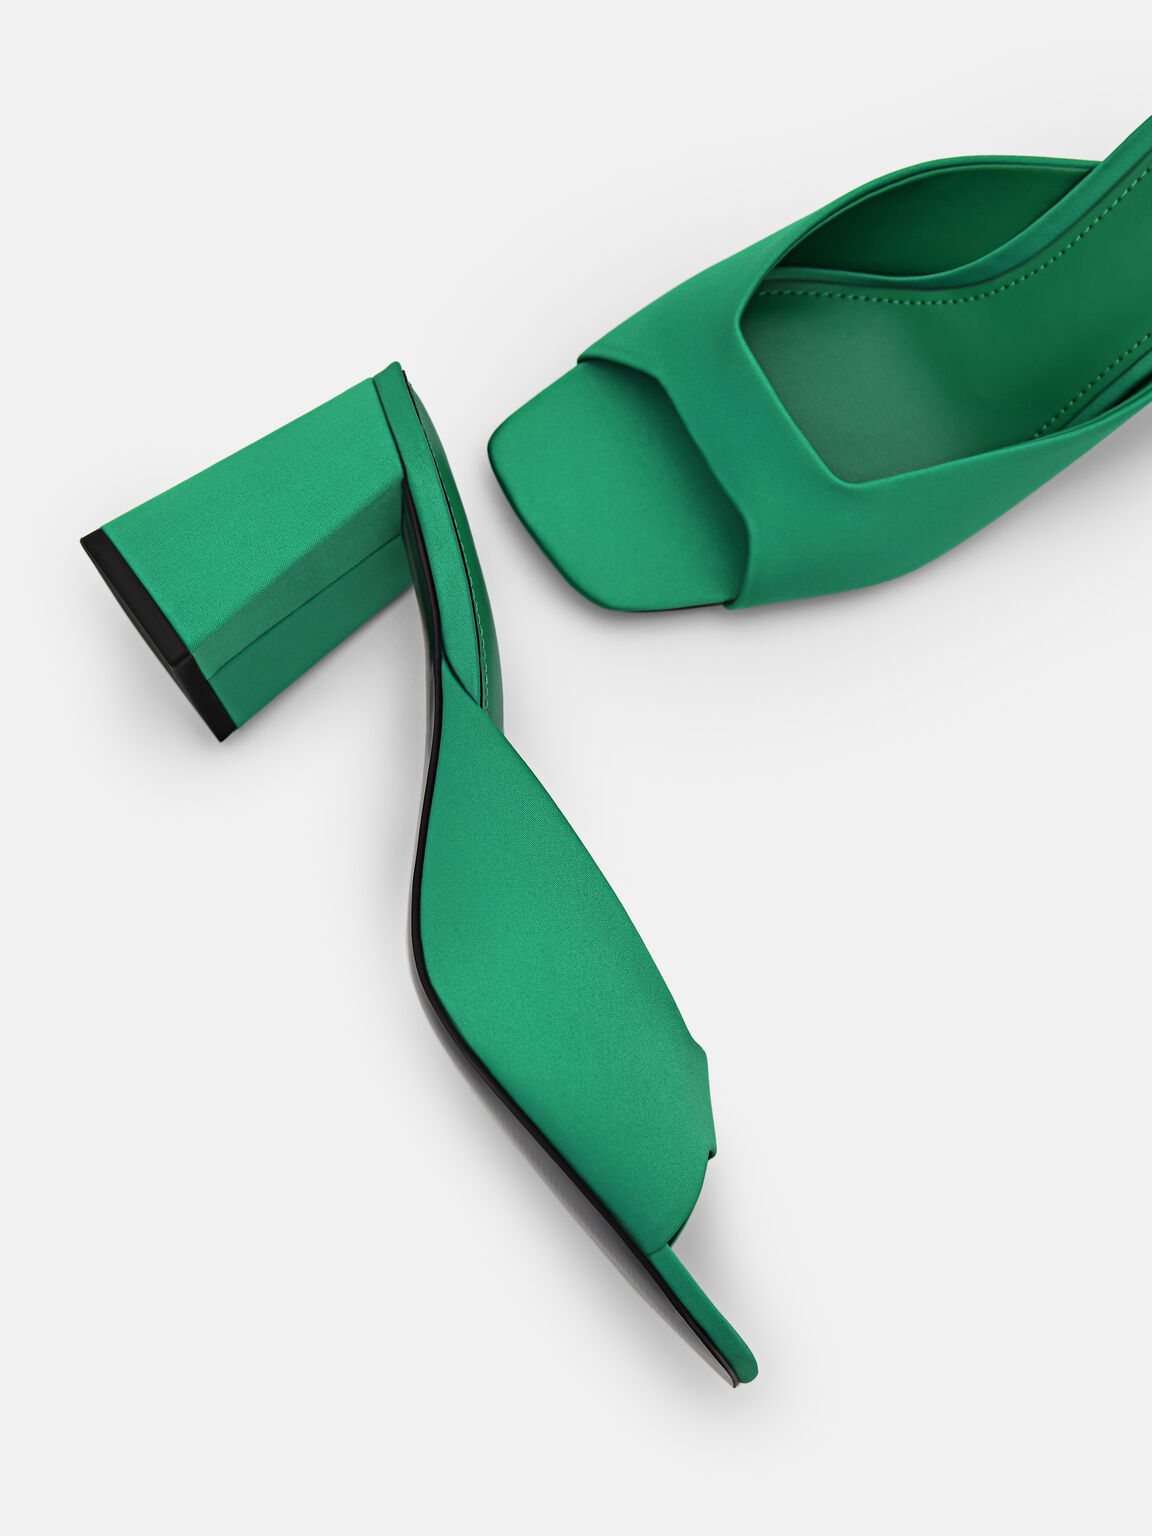 Peggy Heel Sandals, Green